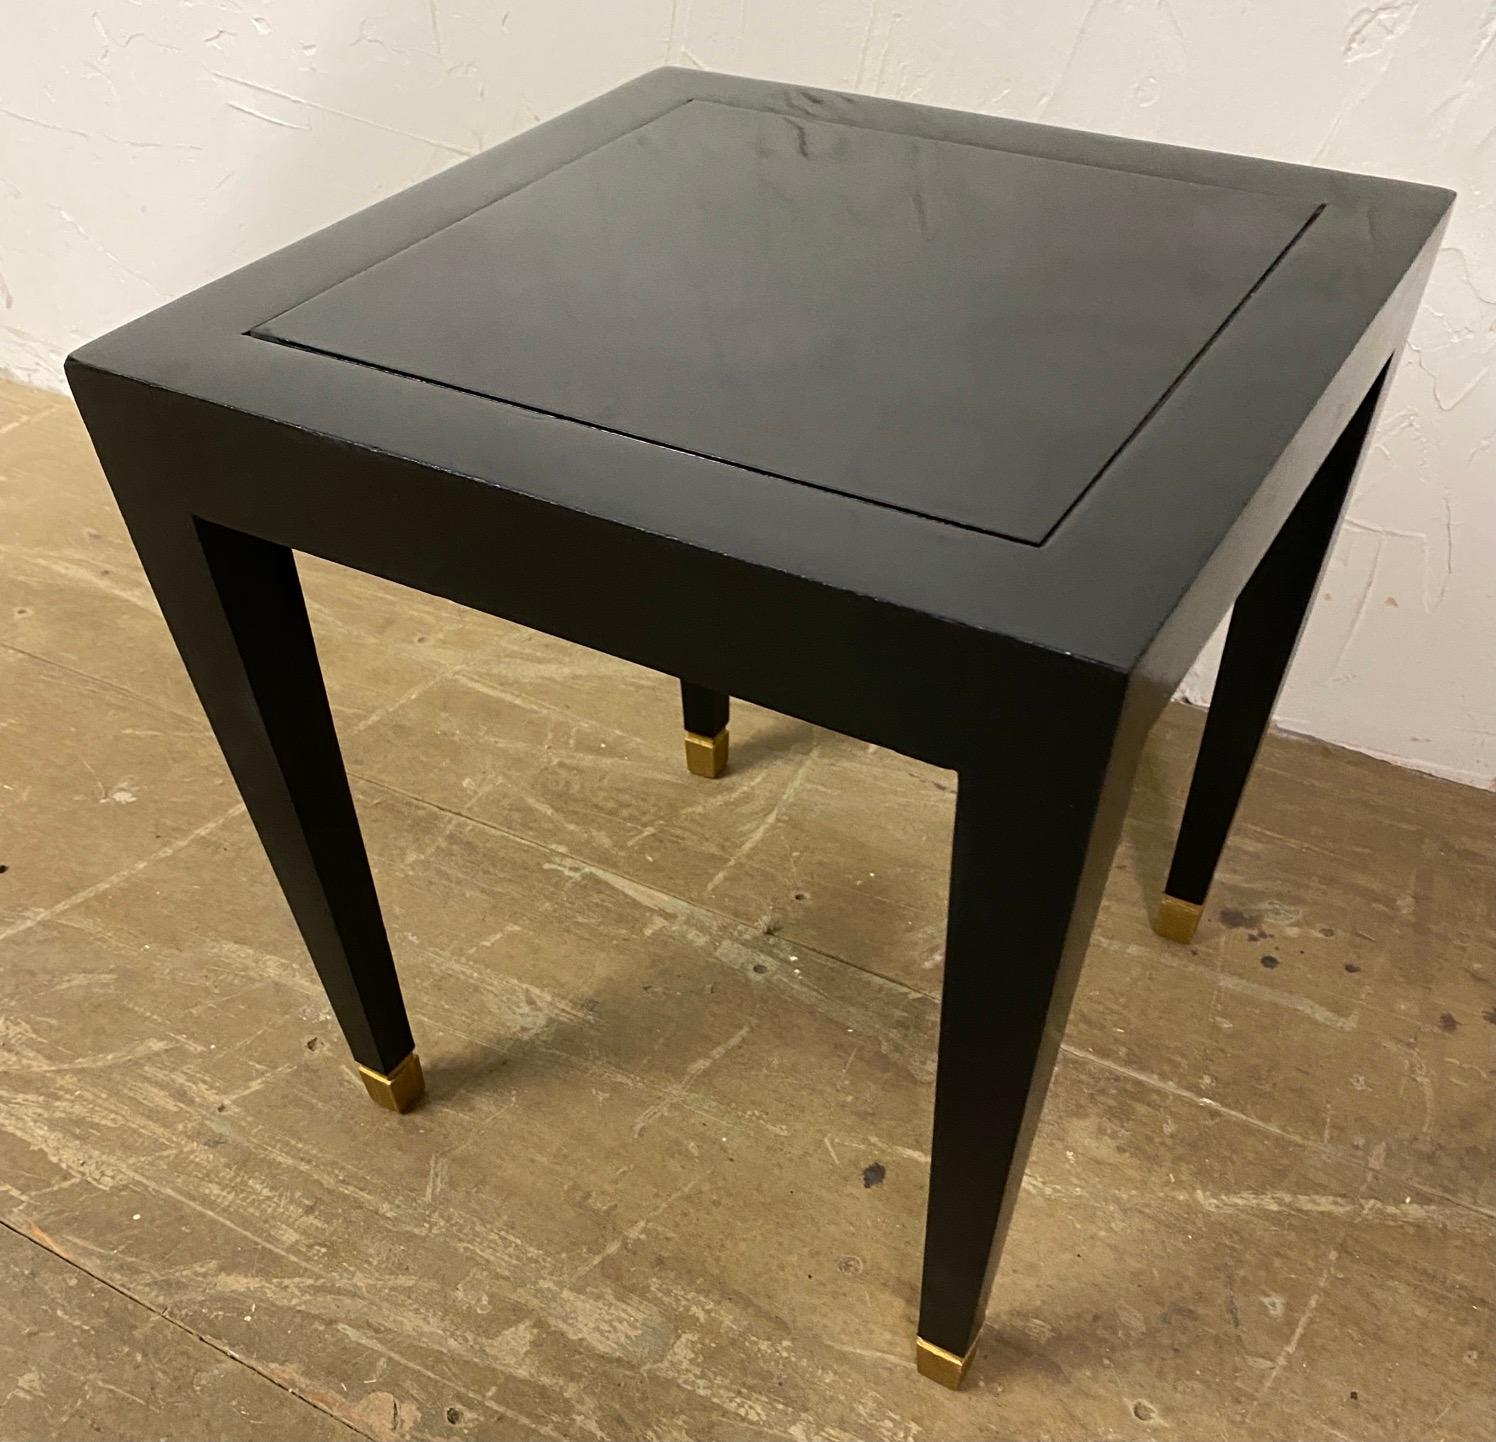 Stilvoller kleiner schwarz lackierter Donghia Mardrid Beistelltisch mit konisch zulaufenden Beinen und quadratischen Messingkappen. Toller kleiner Tisch, den man neben einen Stuhl oder ein Sofa stellen kann, um ein Getränk darauf abzustellen. Der